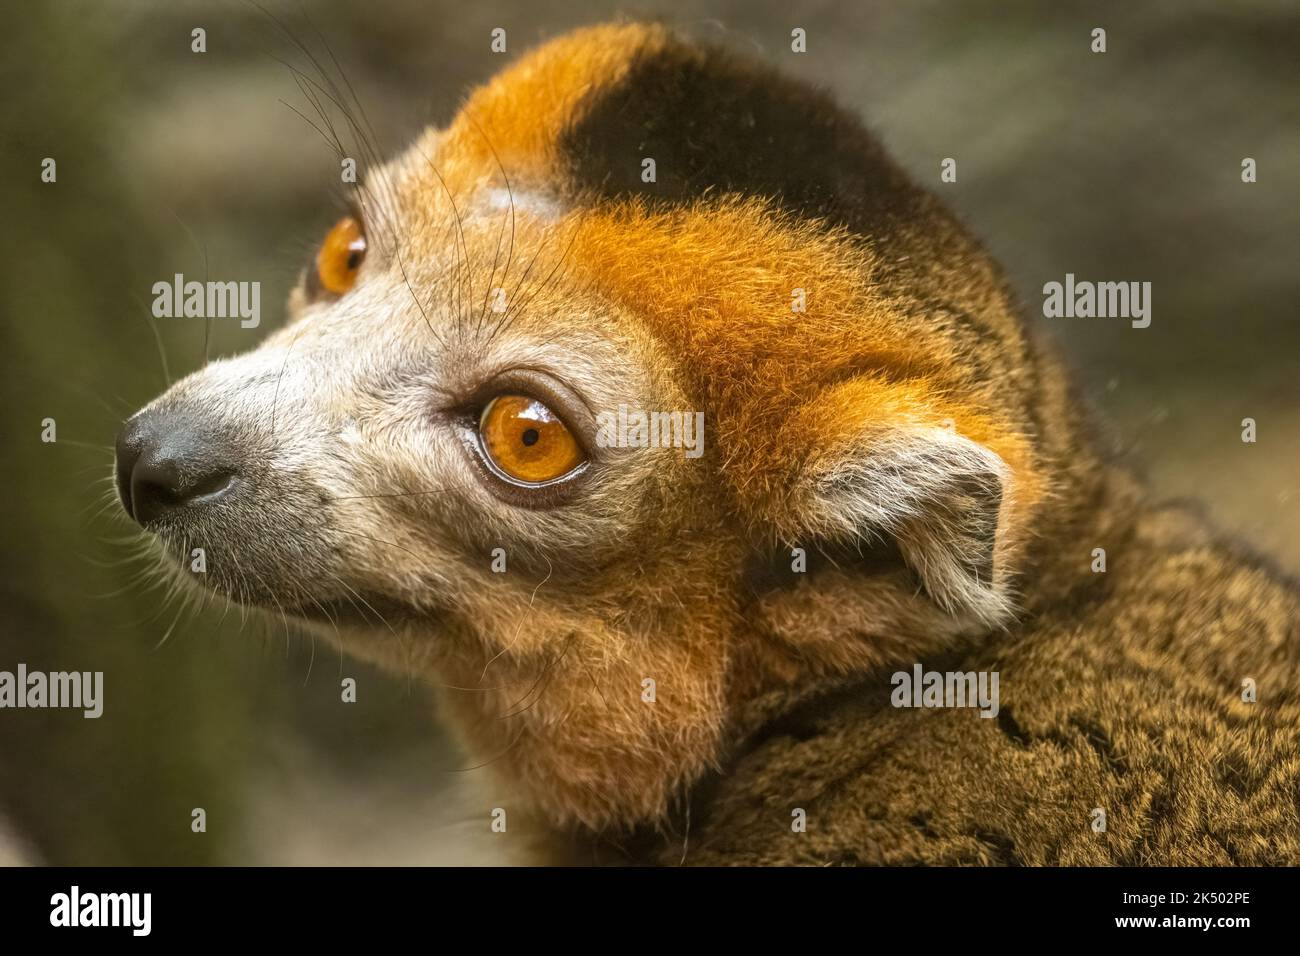 Lemur couronné (Eulemur coronatus) de Madagascar, un pays insulaire au large de la côte sud-africaine, au zoo d'Atlanta à Atlanta, en Géorgie. (ÉTATS-UNIS) Banque D'Images